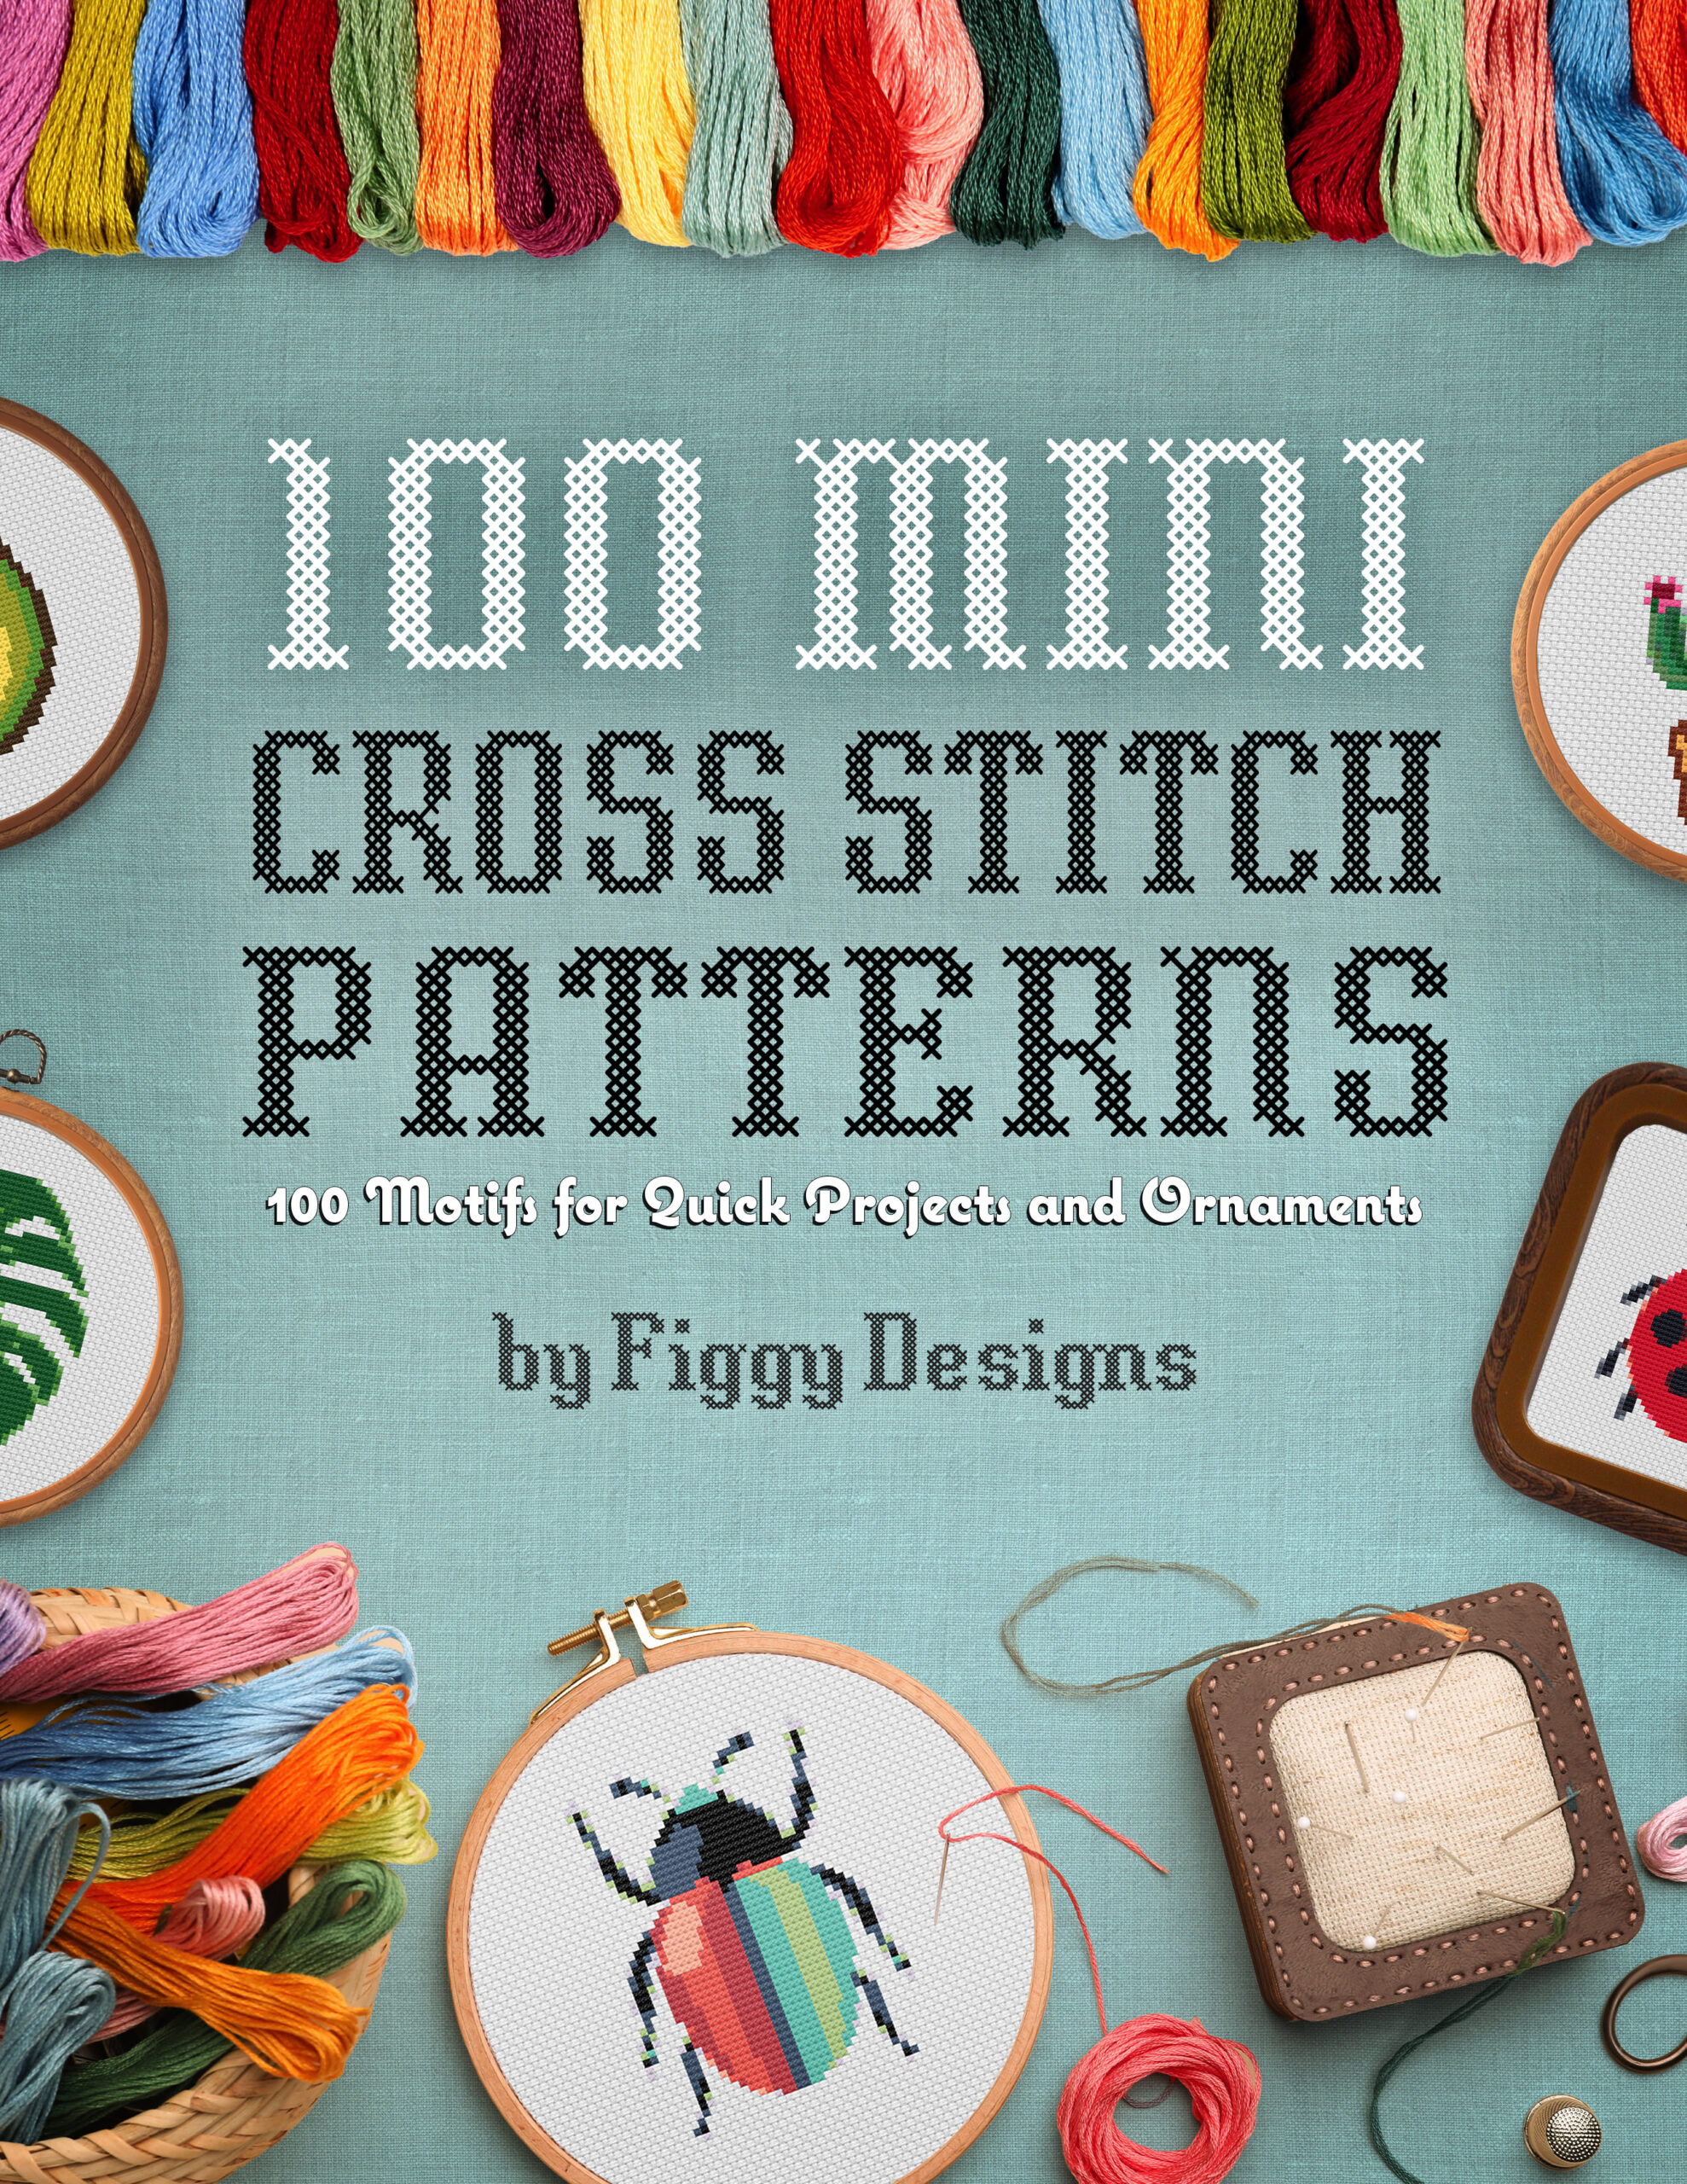 100 Cross-Stitch Patterns: To Mix-and-Match